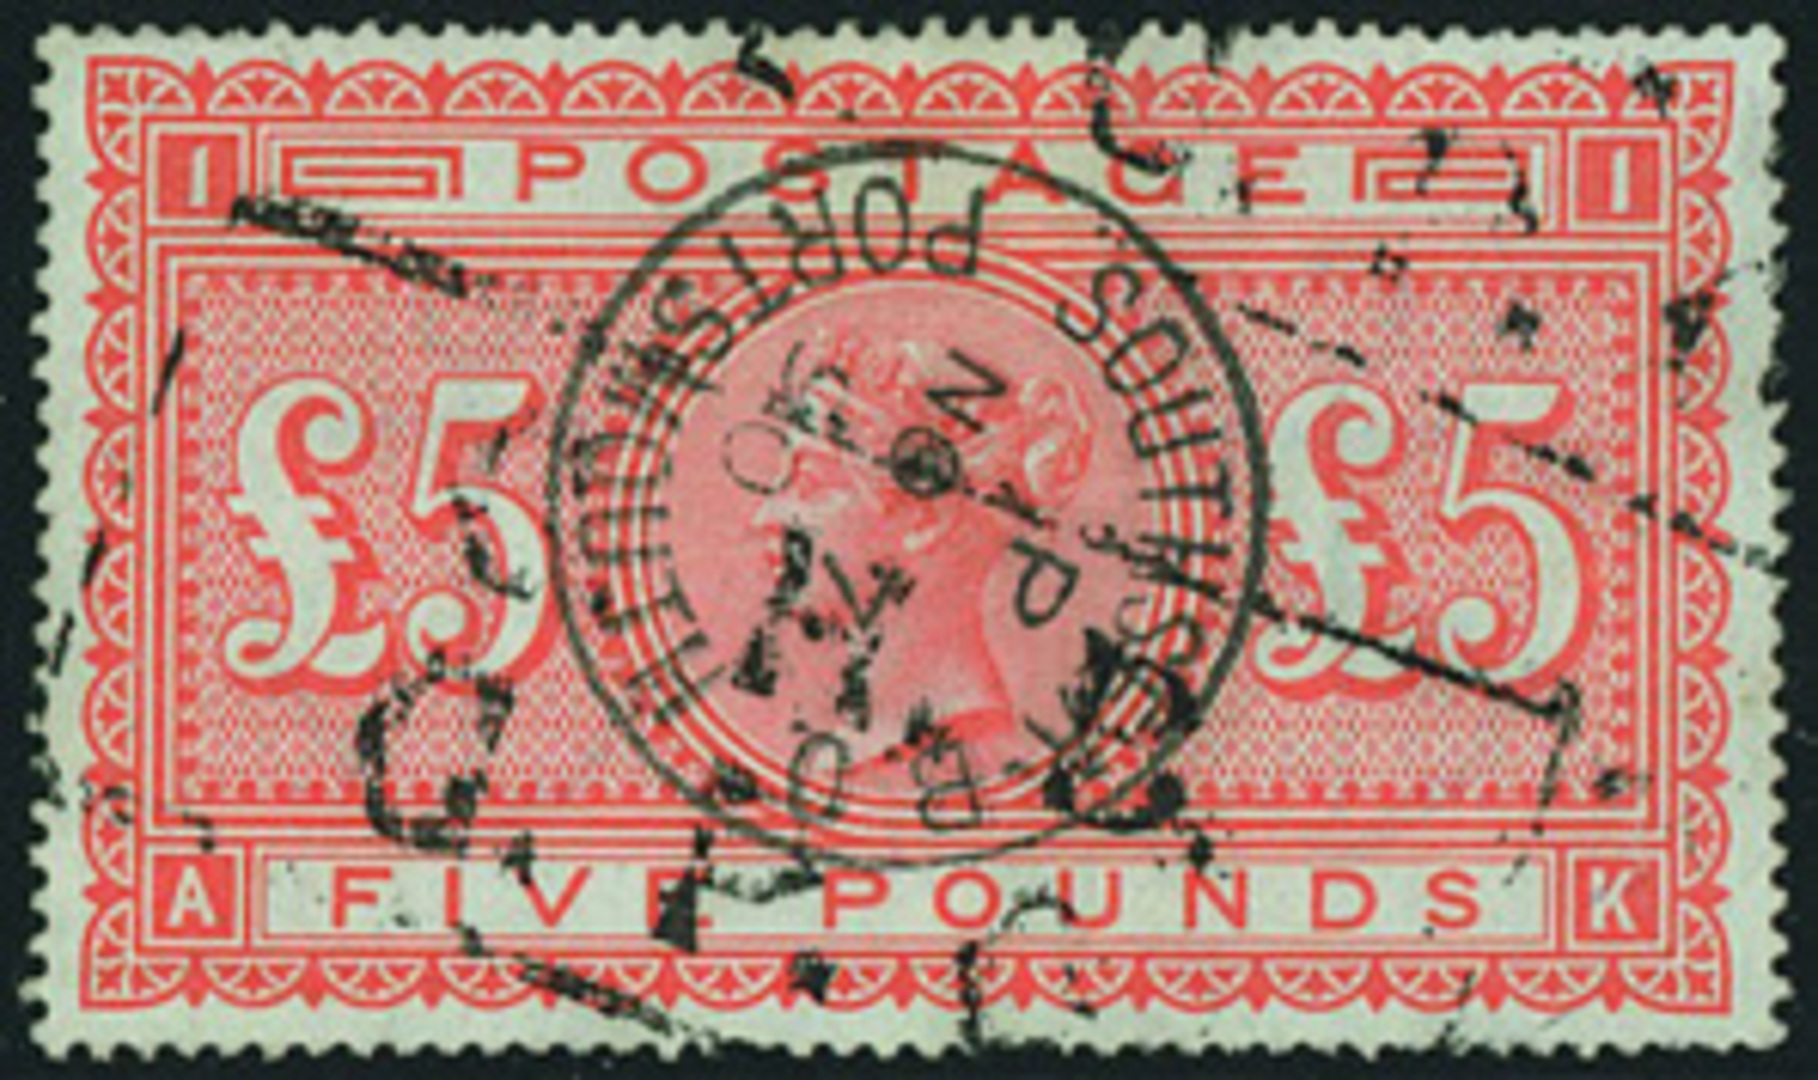 £5 orange postage stamps